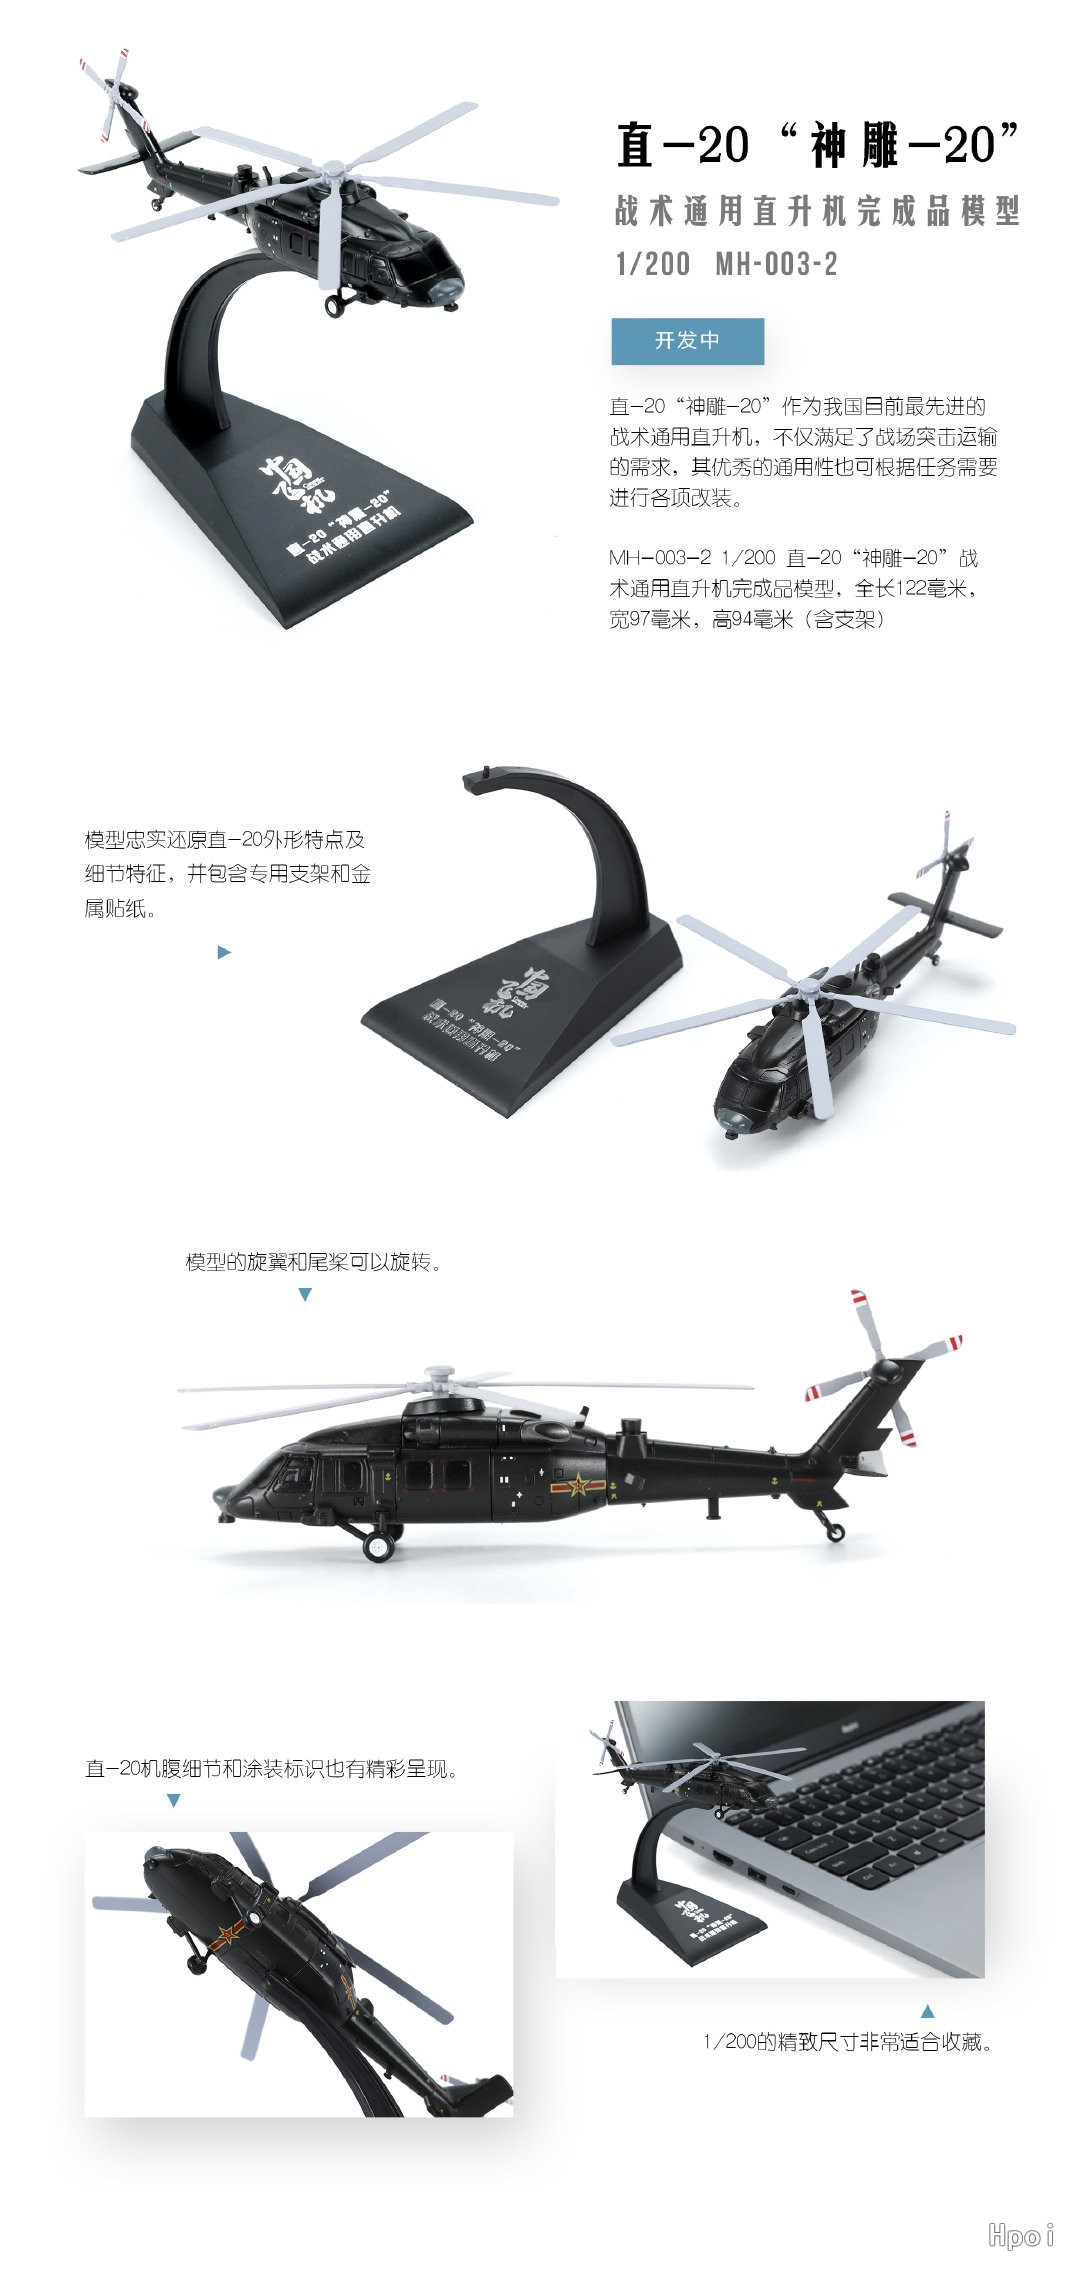 MH-003-2 直-20 “神雕-20” 战术通用直升机